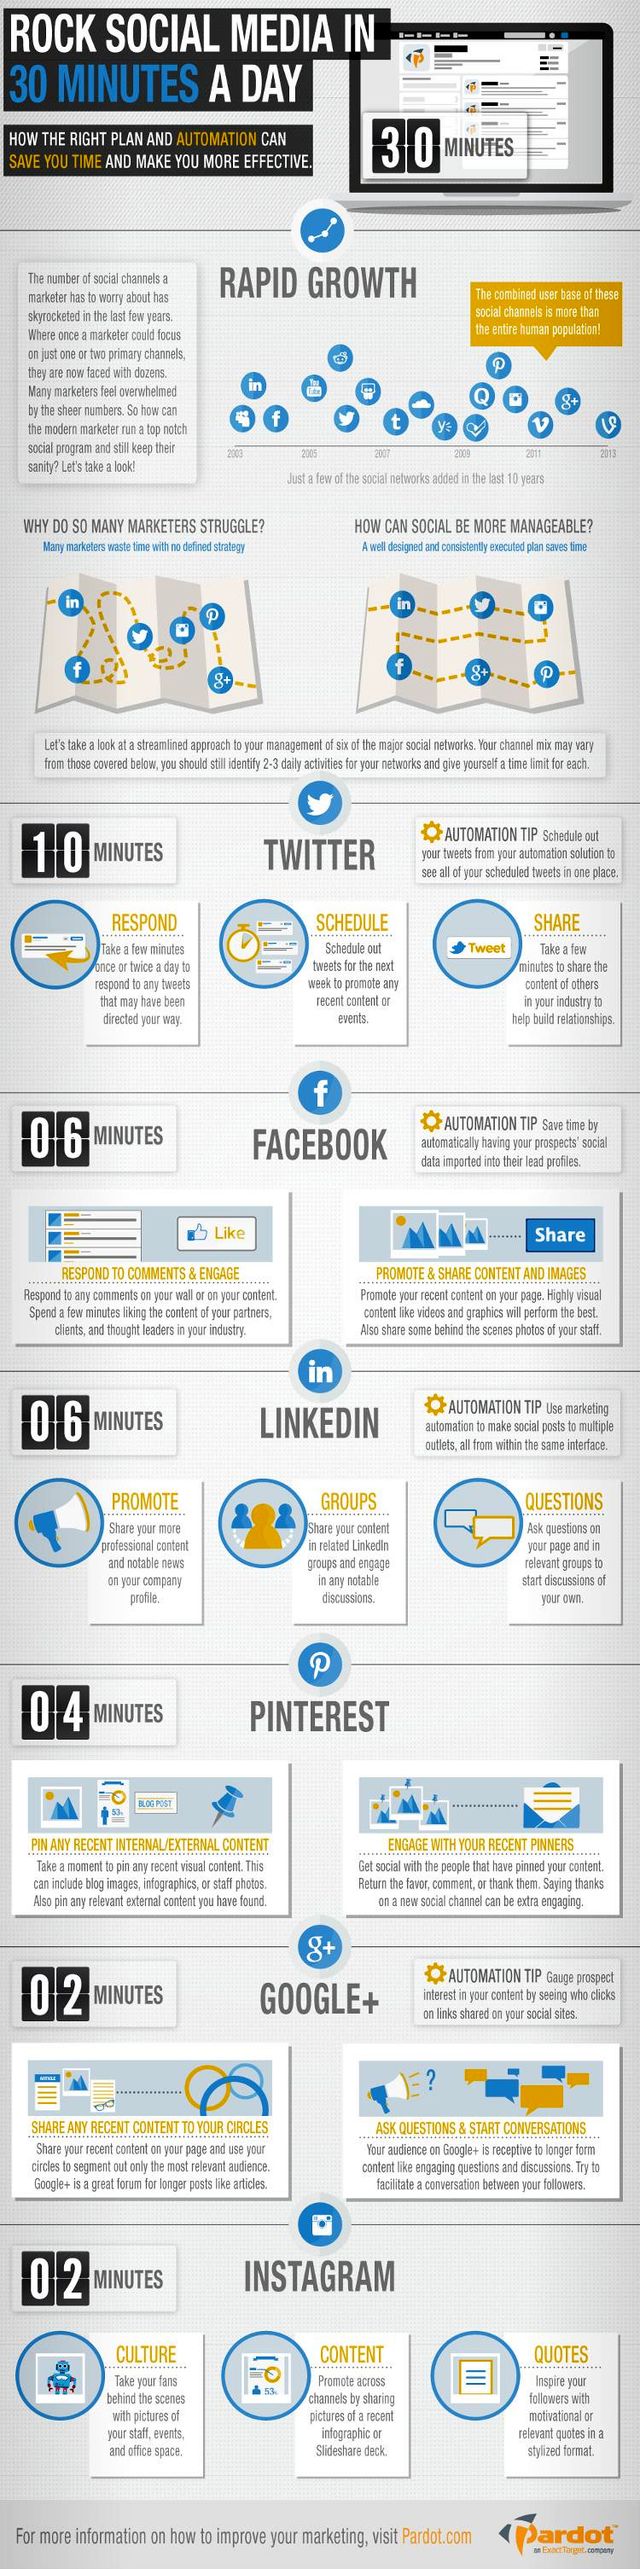 Infografía con tips para gestionar nuestras redes sociales en 30 minutos